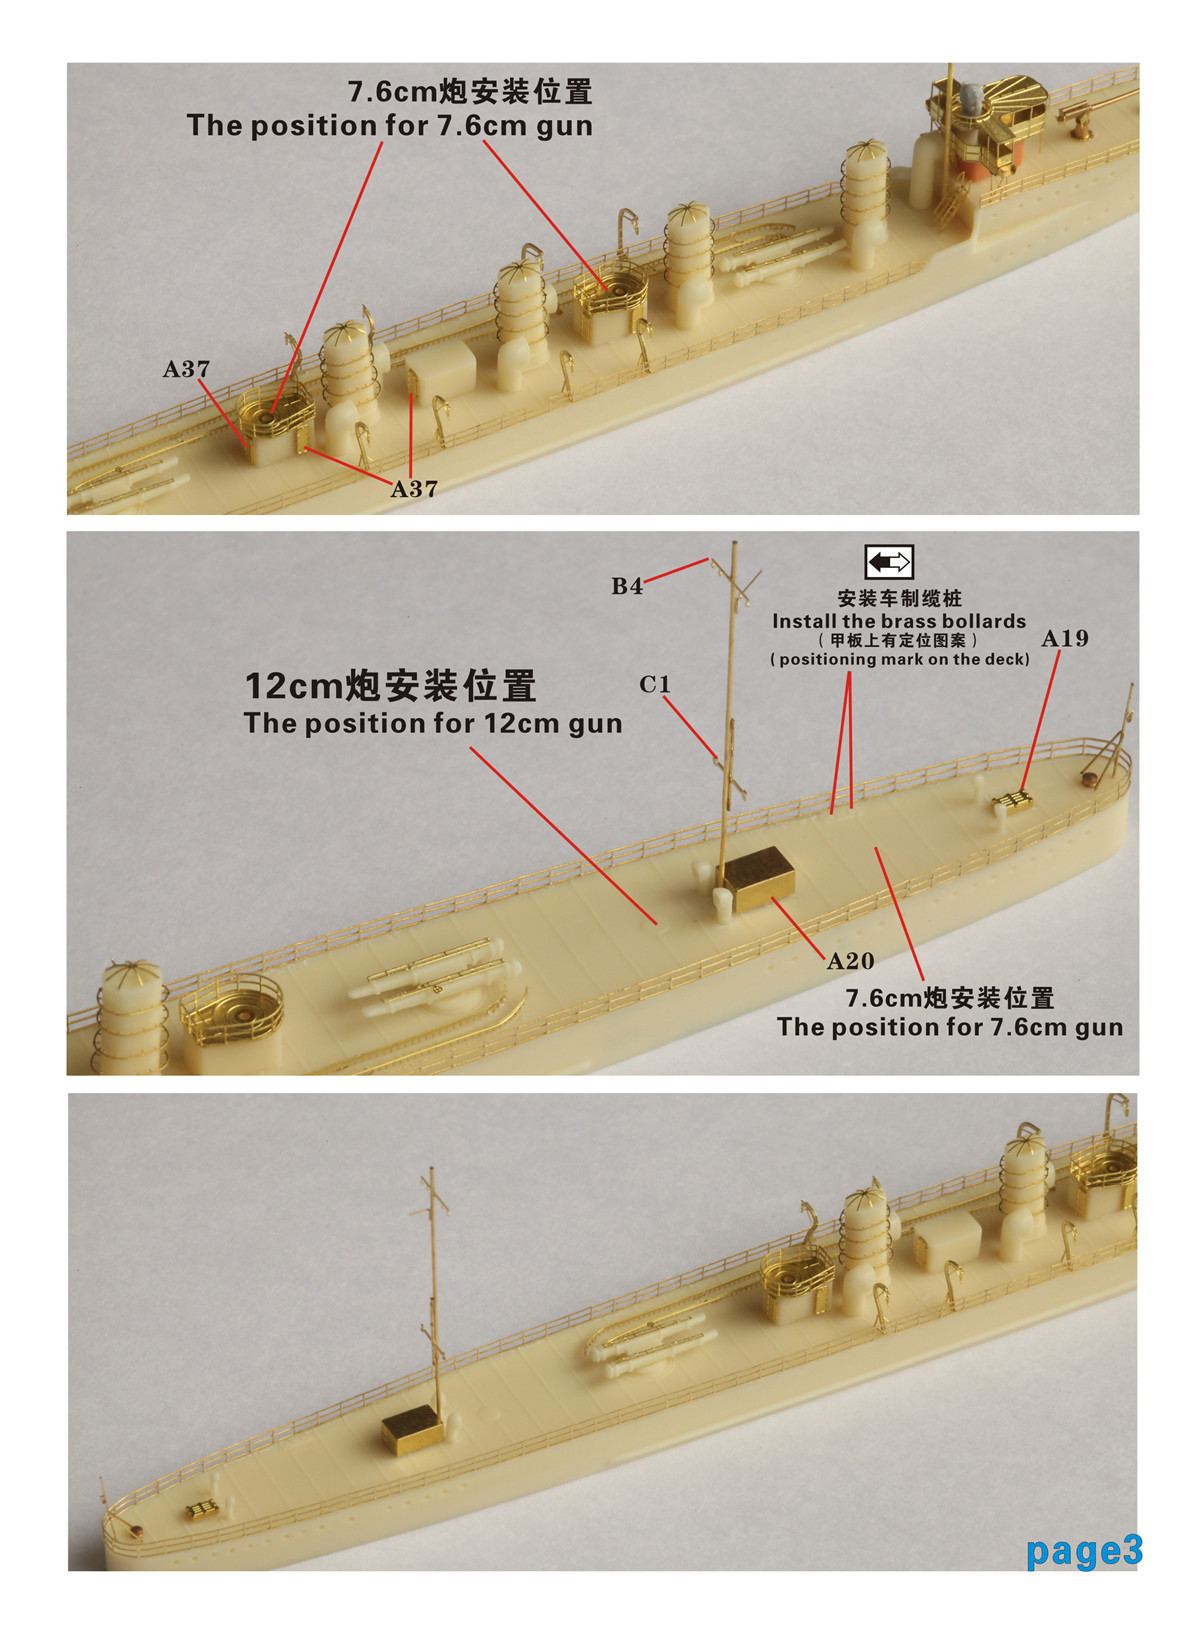 1/700 旧日本海军海风型驱逐舰树脂模型套件 - 点击图像关闭